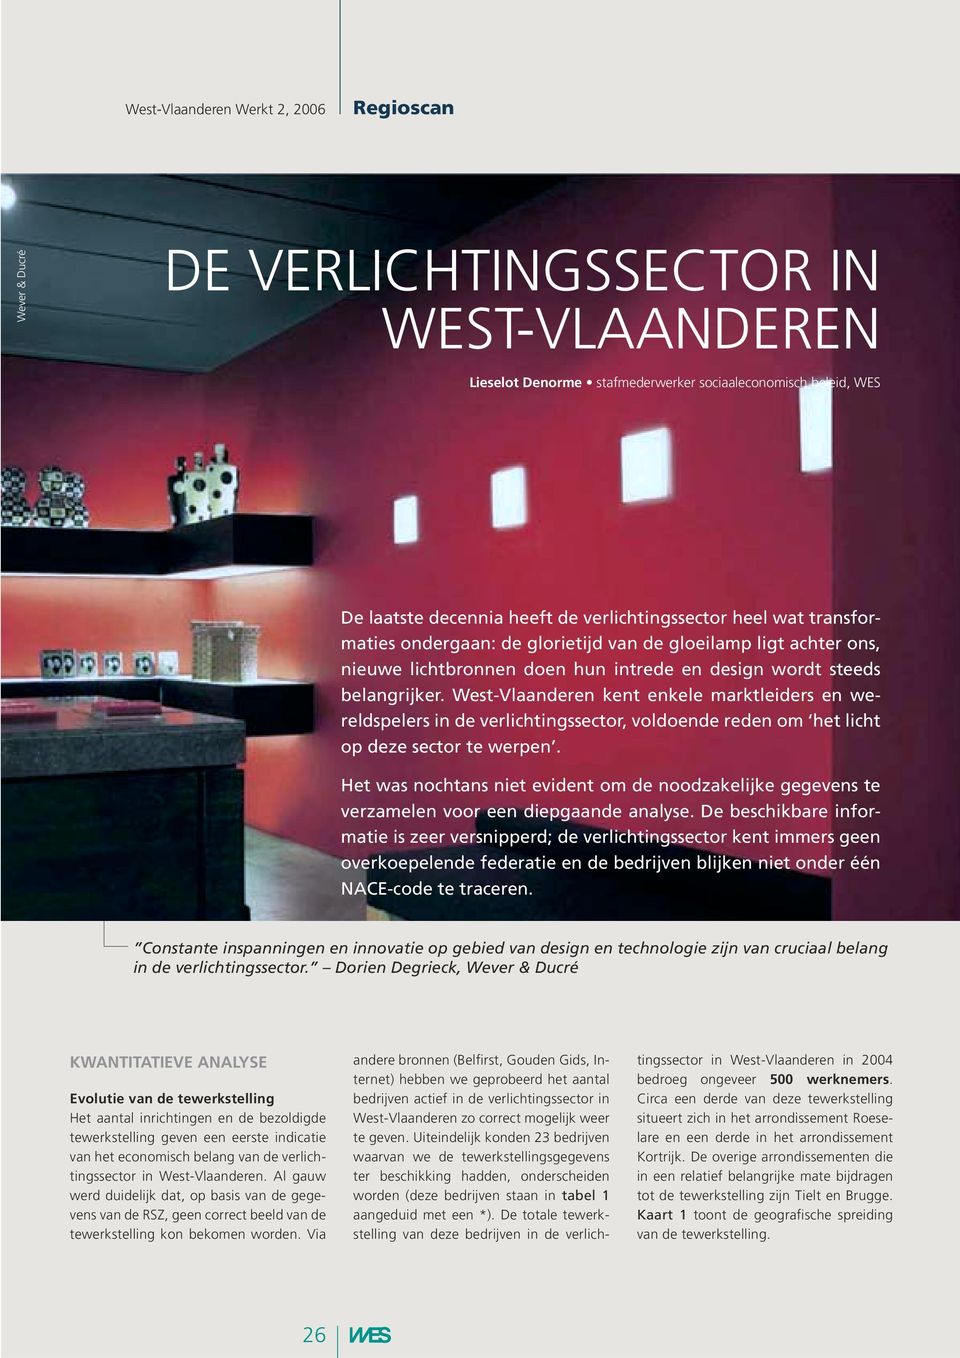 West-Vlaanderen kent enkele marktleiders en wereldspelers in de verlichtingssector, voldoende reden om het licht op deze sector te werpen.